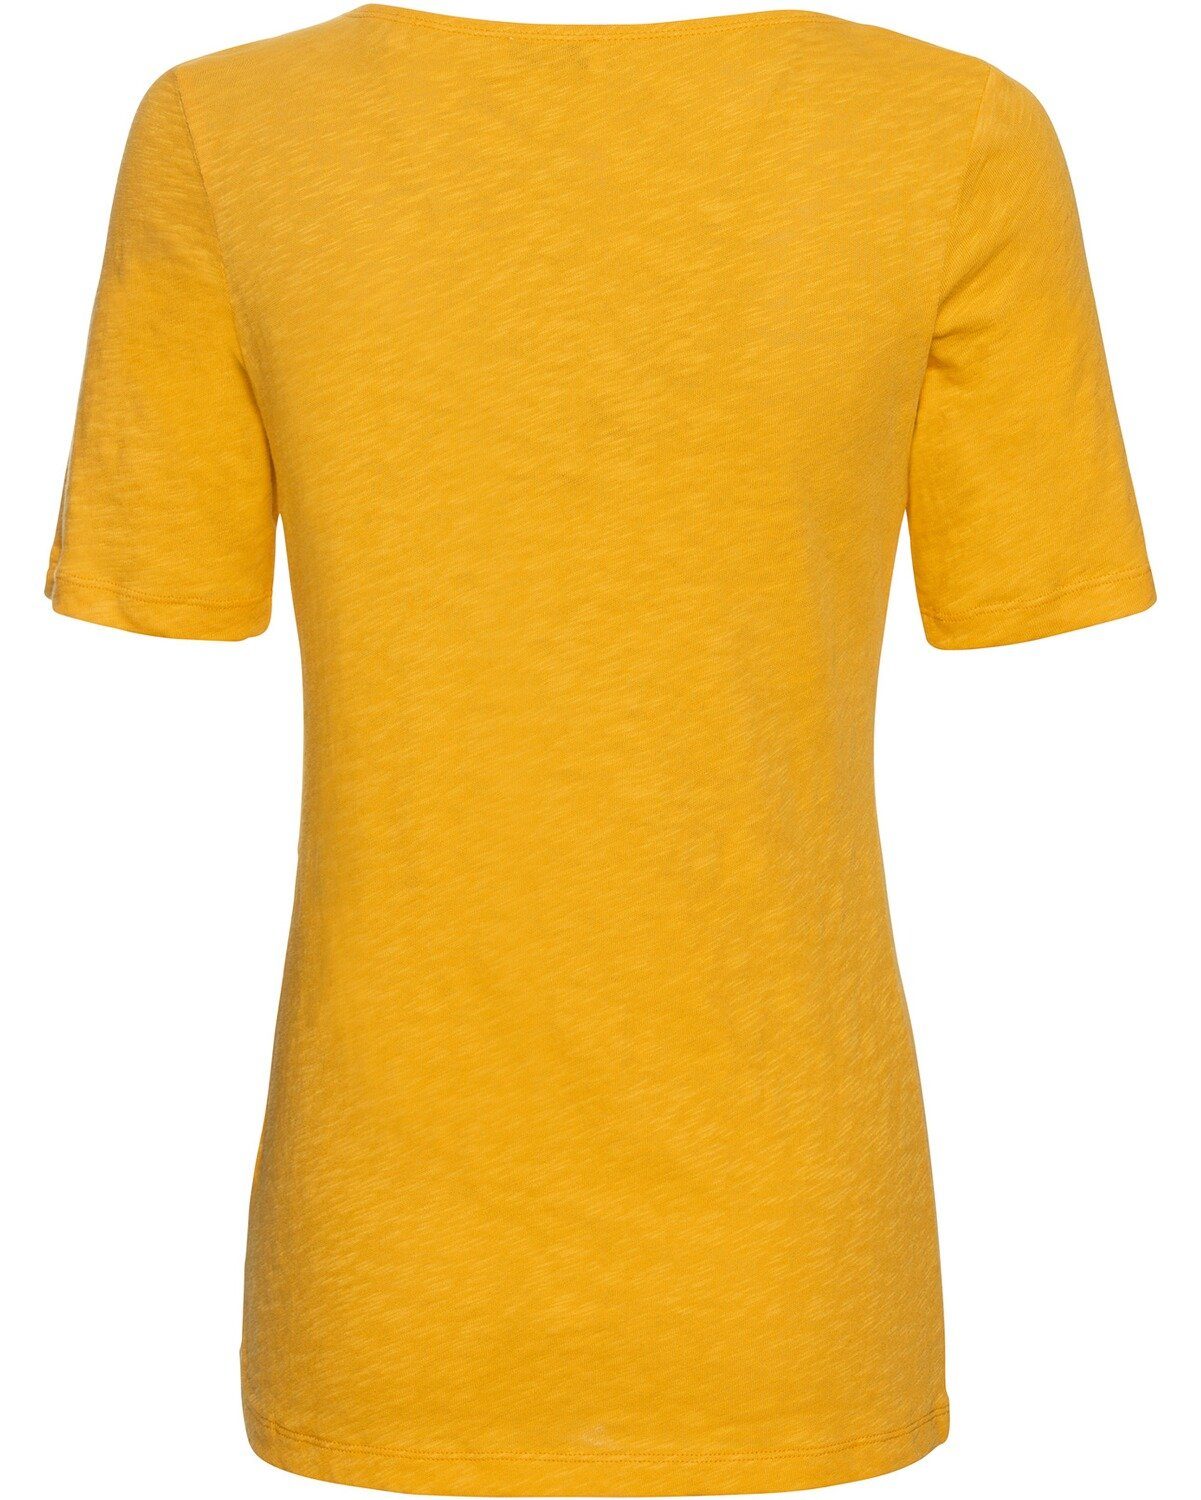 Halbarm-Shirt T-Shirt Gelb O'Polo Marc